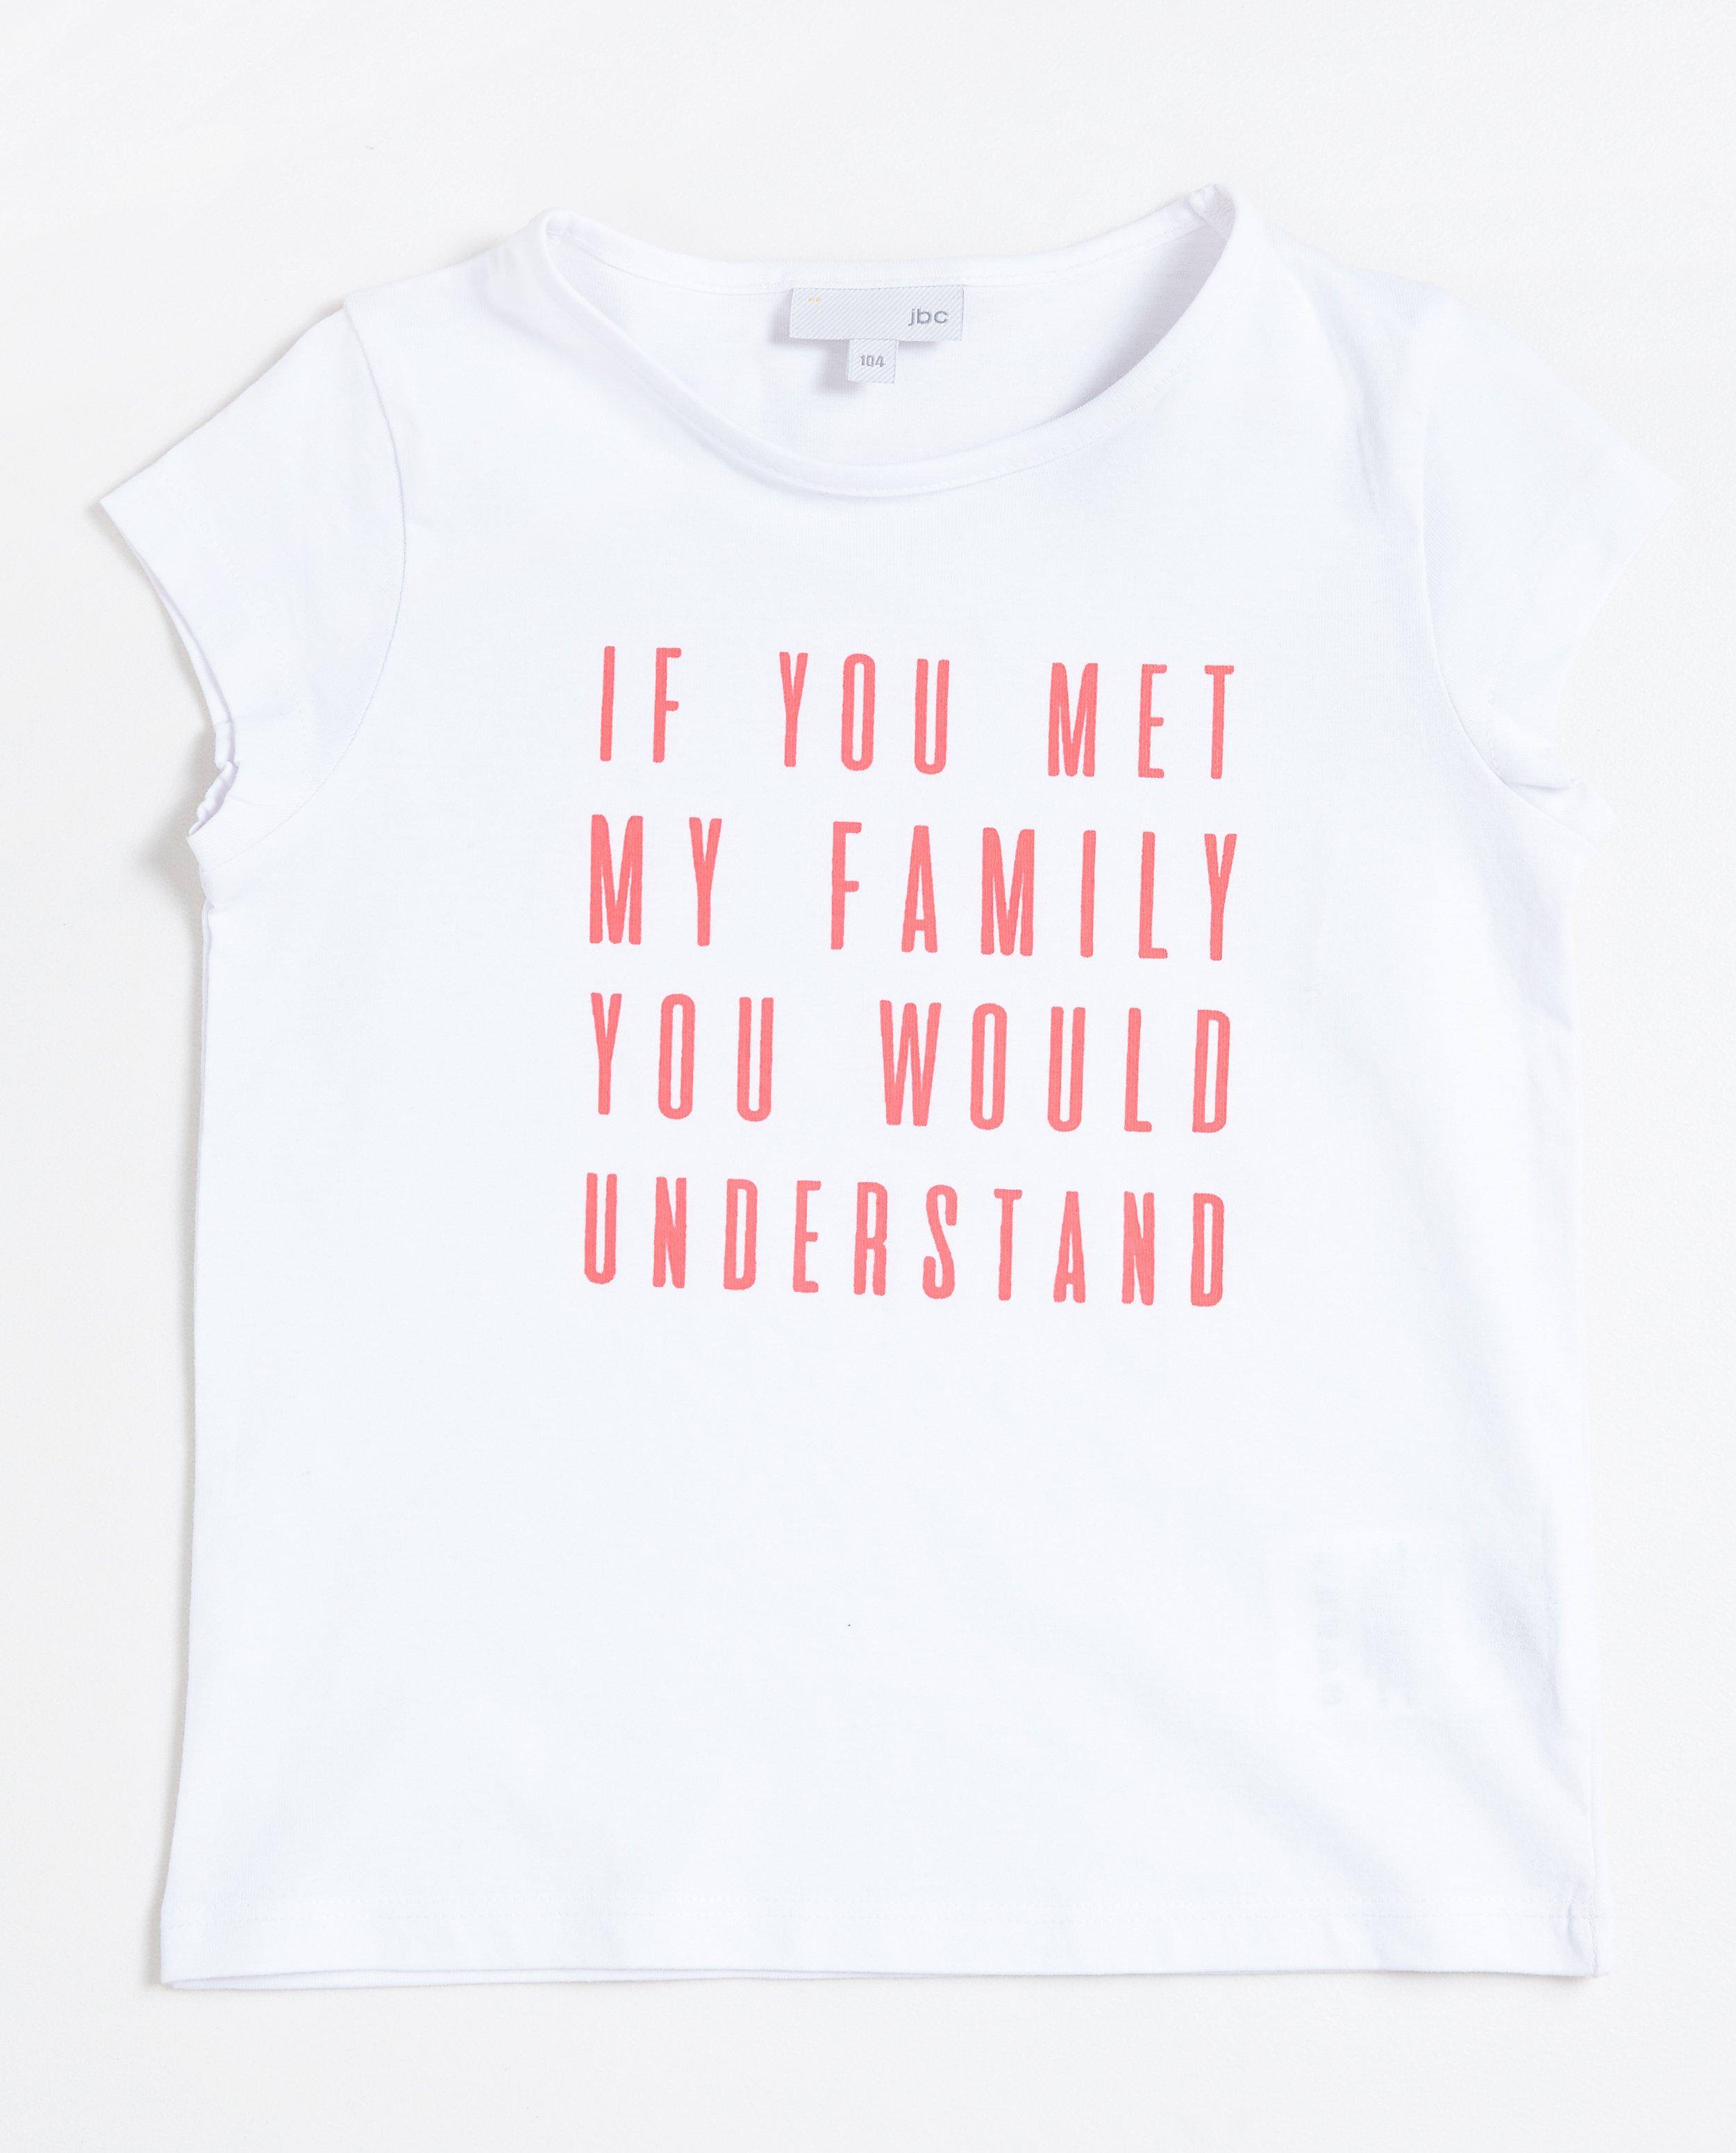 T-shirts - Grijs T-shirt #familystoriesjbc